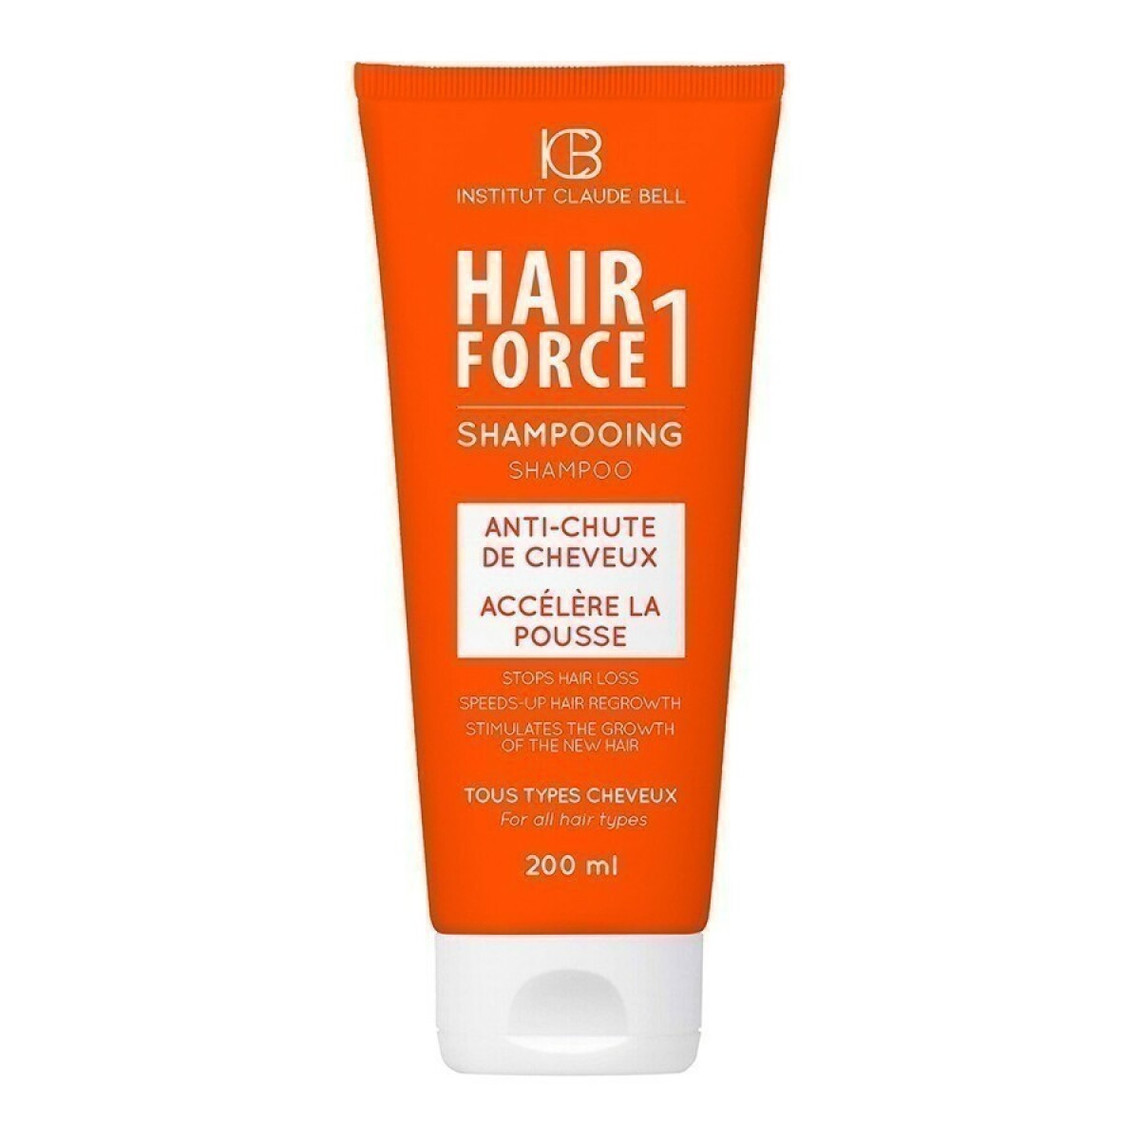 Shampooing Anti Chute ? Hair Force 1 200ml